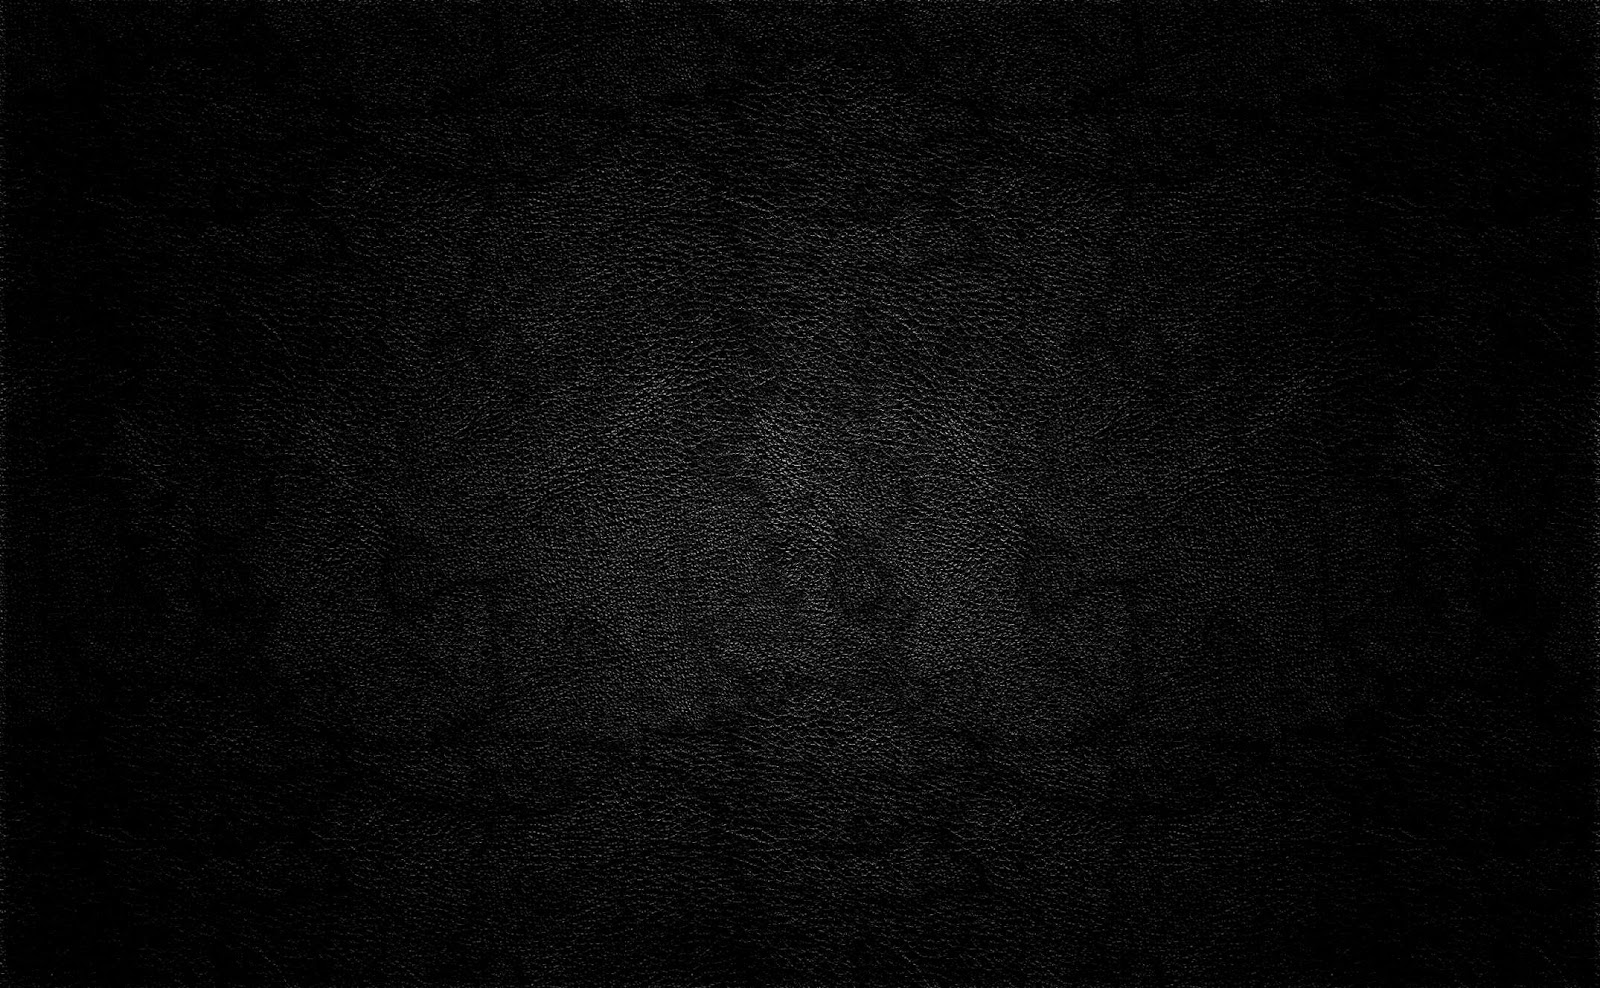 [75+] Full Black Wallpaper on WallpaperSafari